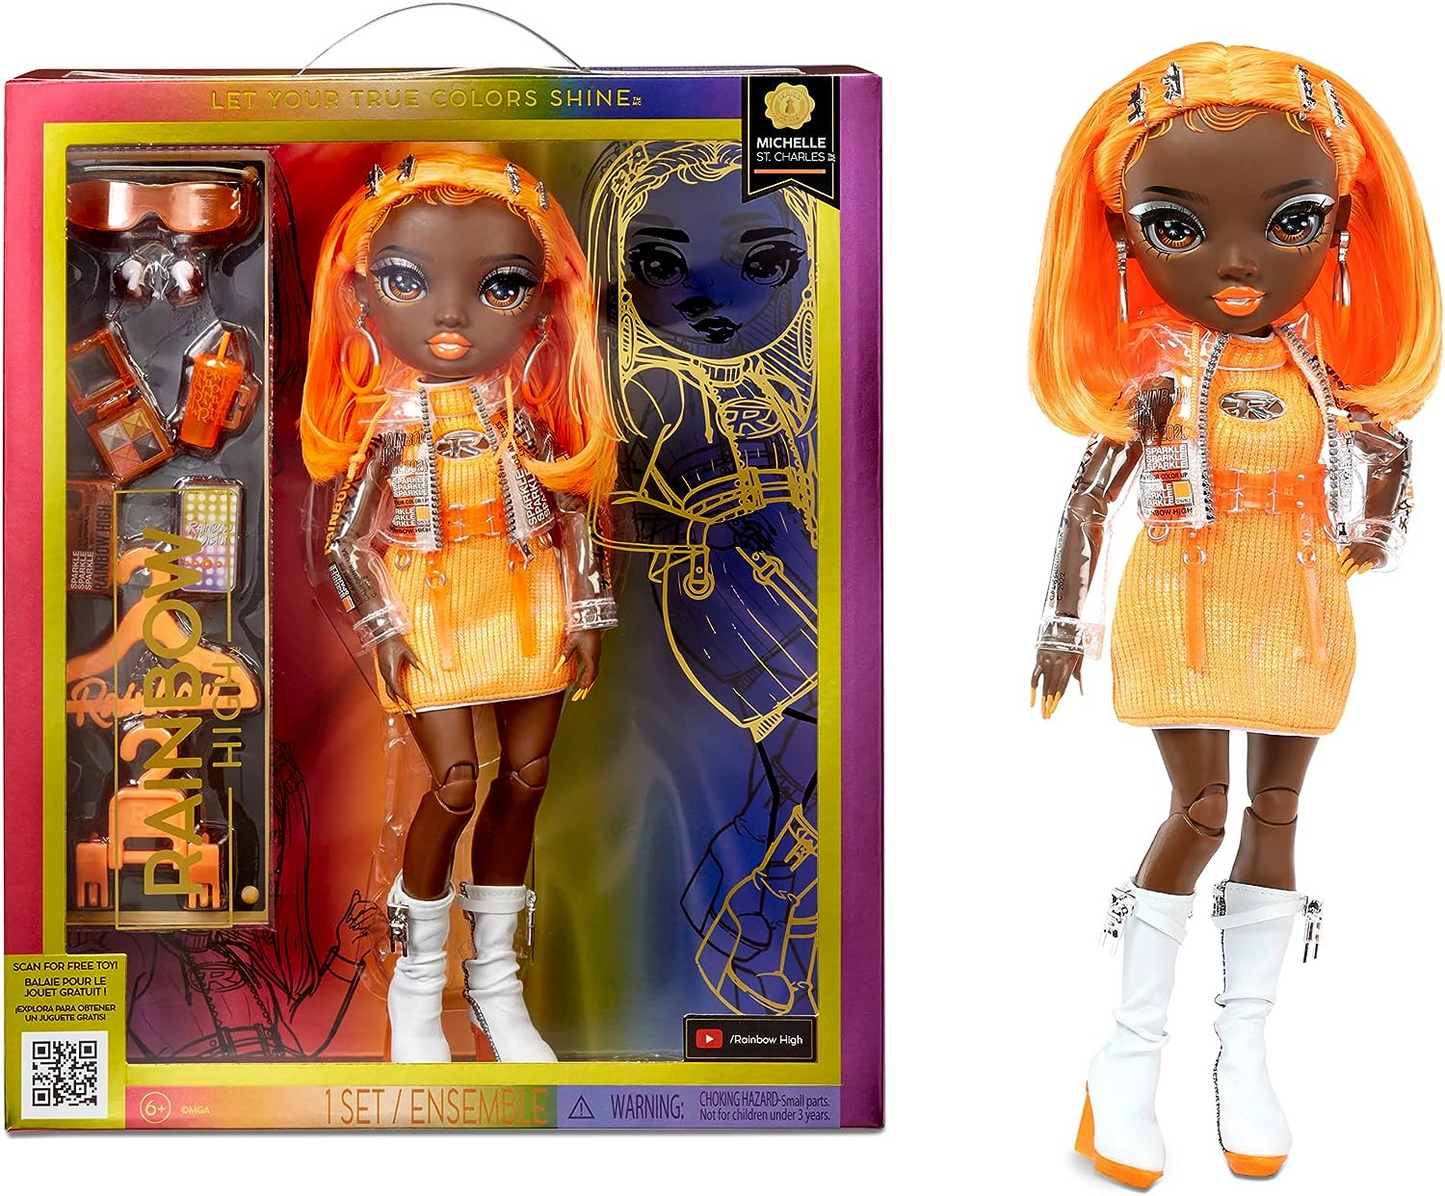 Rainbow High Boneca da moda - MICHELLE ST.CHARLES - Boneca laranja - roupa da moda e mais de 10 acessórios coloridos para brincar - para colecionadores e crianças de 4 a 12 anos